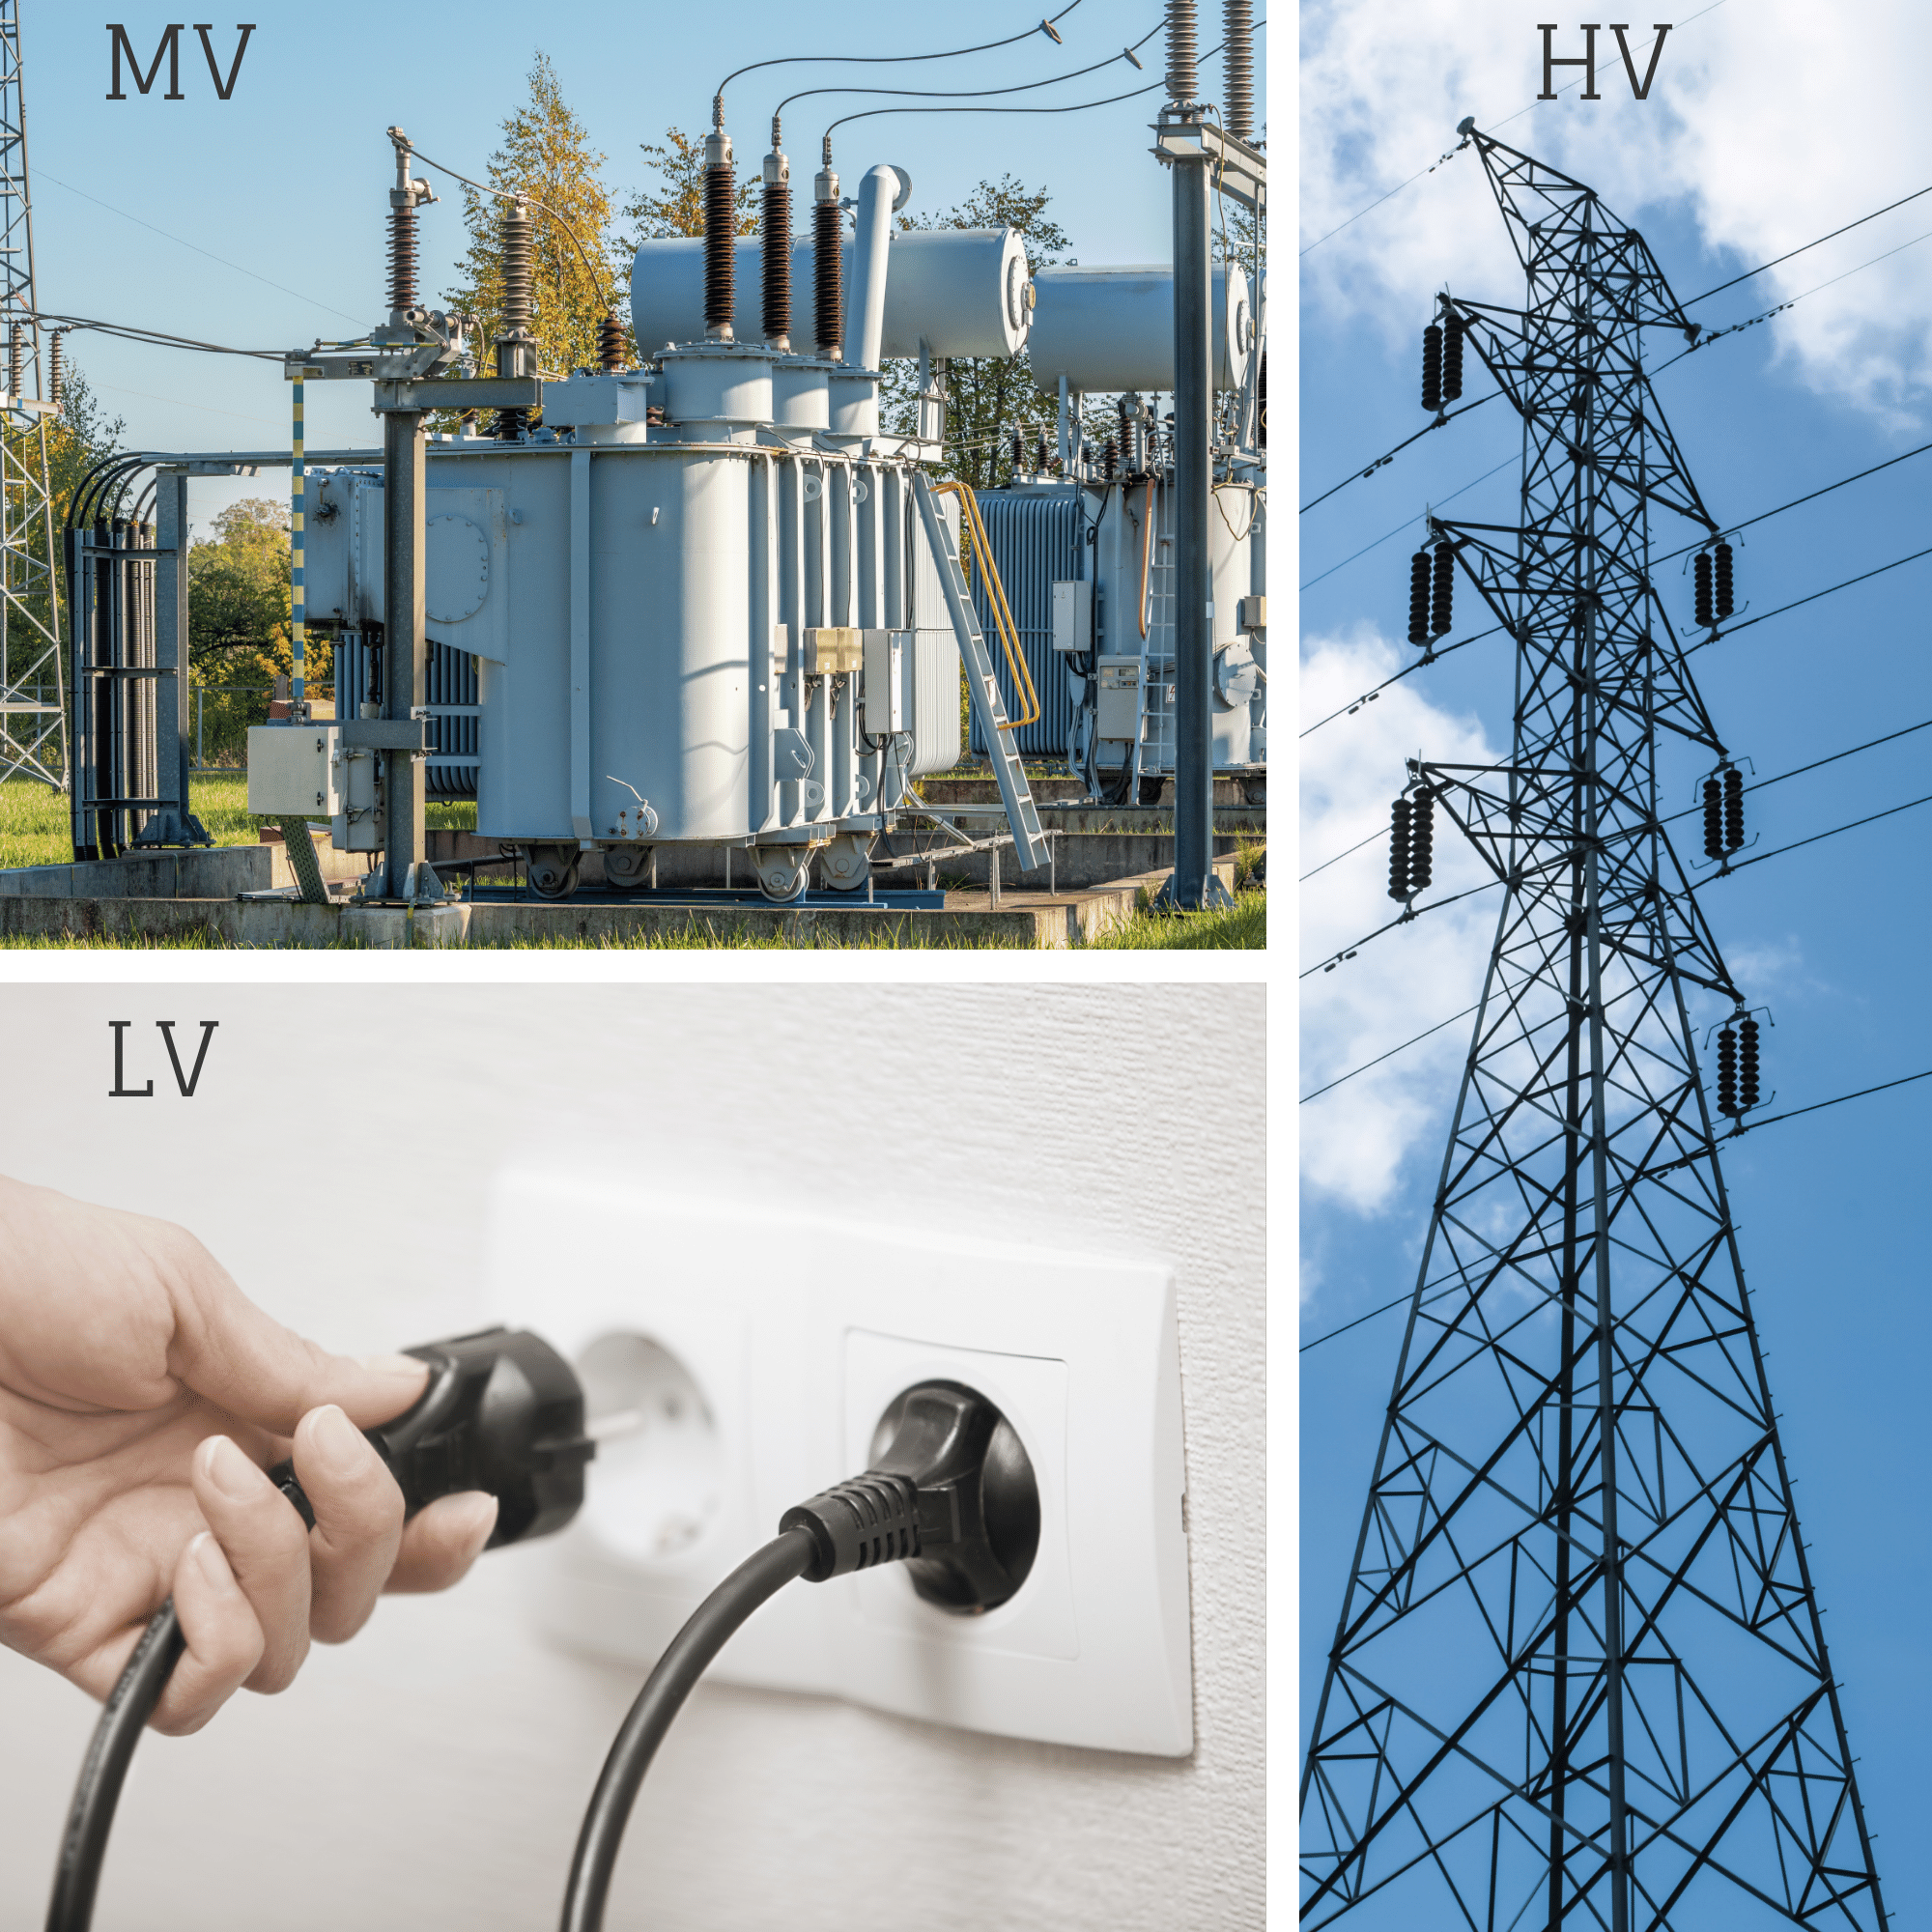 Full Form of Electrical Voltage Range  LV MV HV EHV & UHV Full form  #electrical #electricity #short 